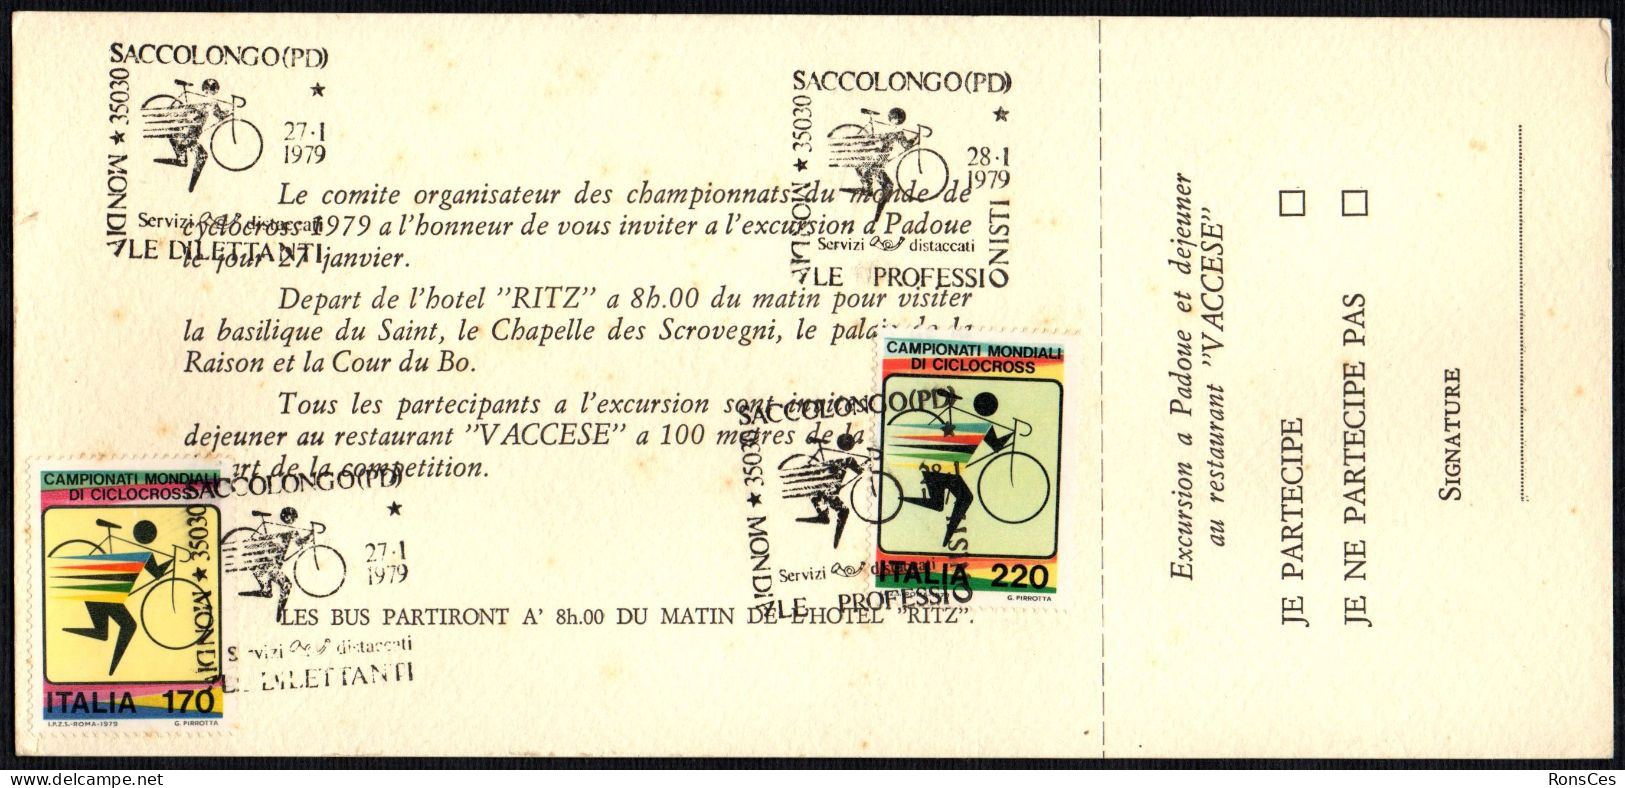 CYCLING - ITALIA SACCOLONGO (PD) 1979 - CAMPIONATO MONDIALE CICLOCROSS - 2 ANNULLI PROFESSIONISTI / DILETTANTI - A - Radsport